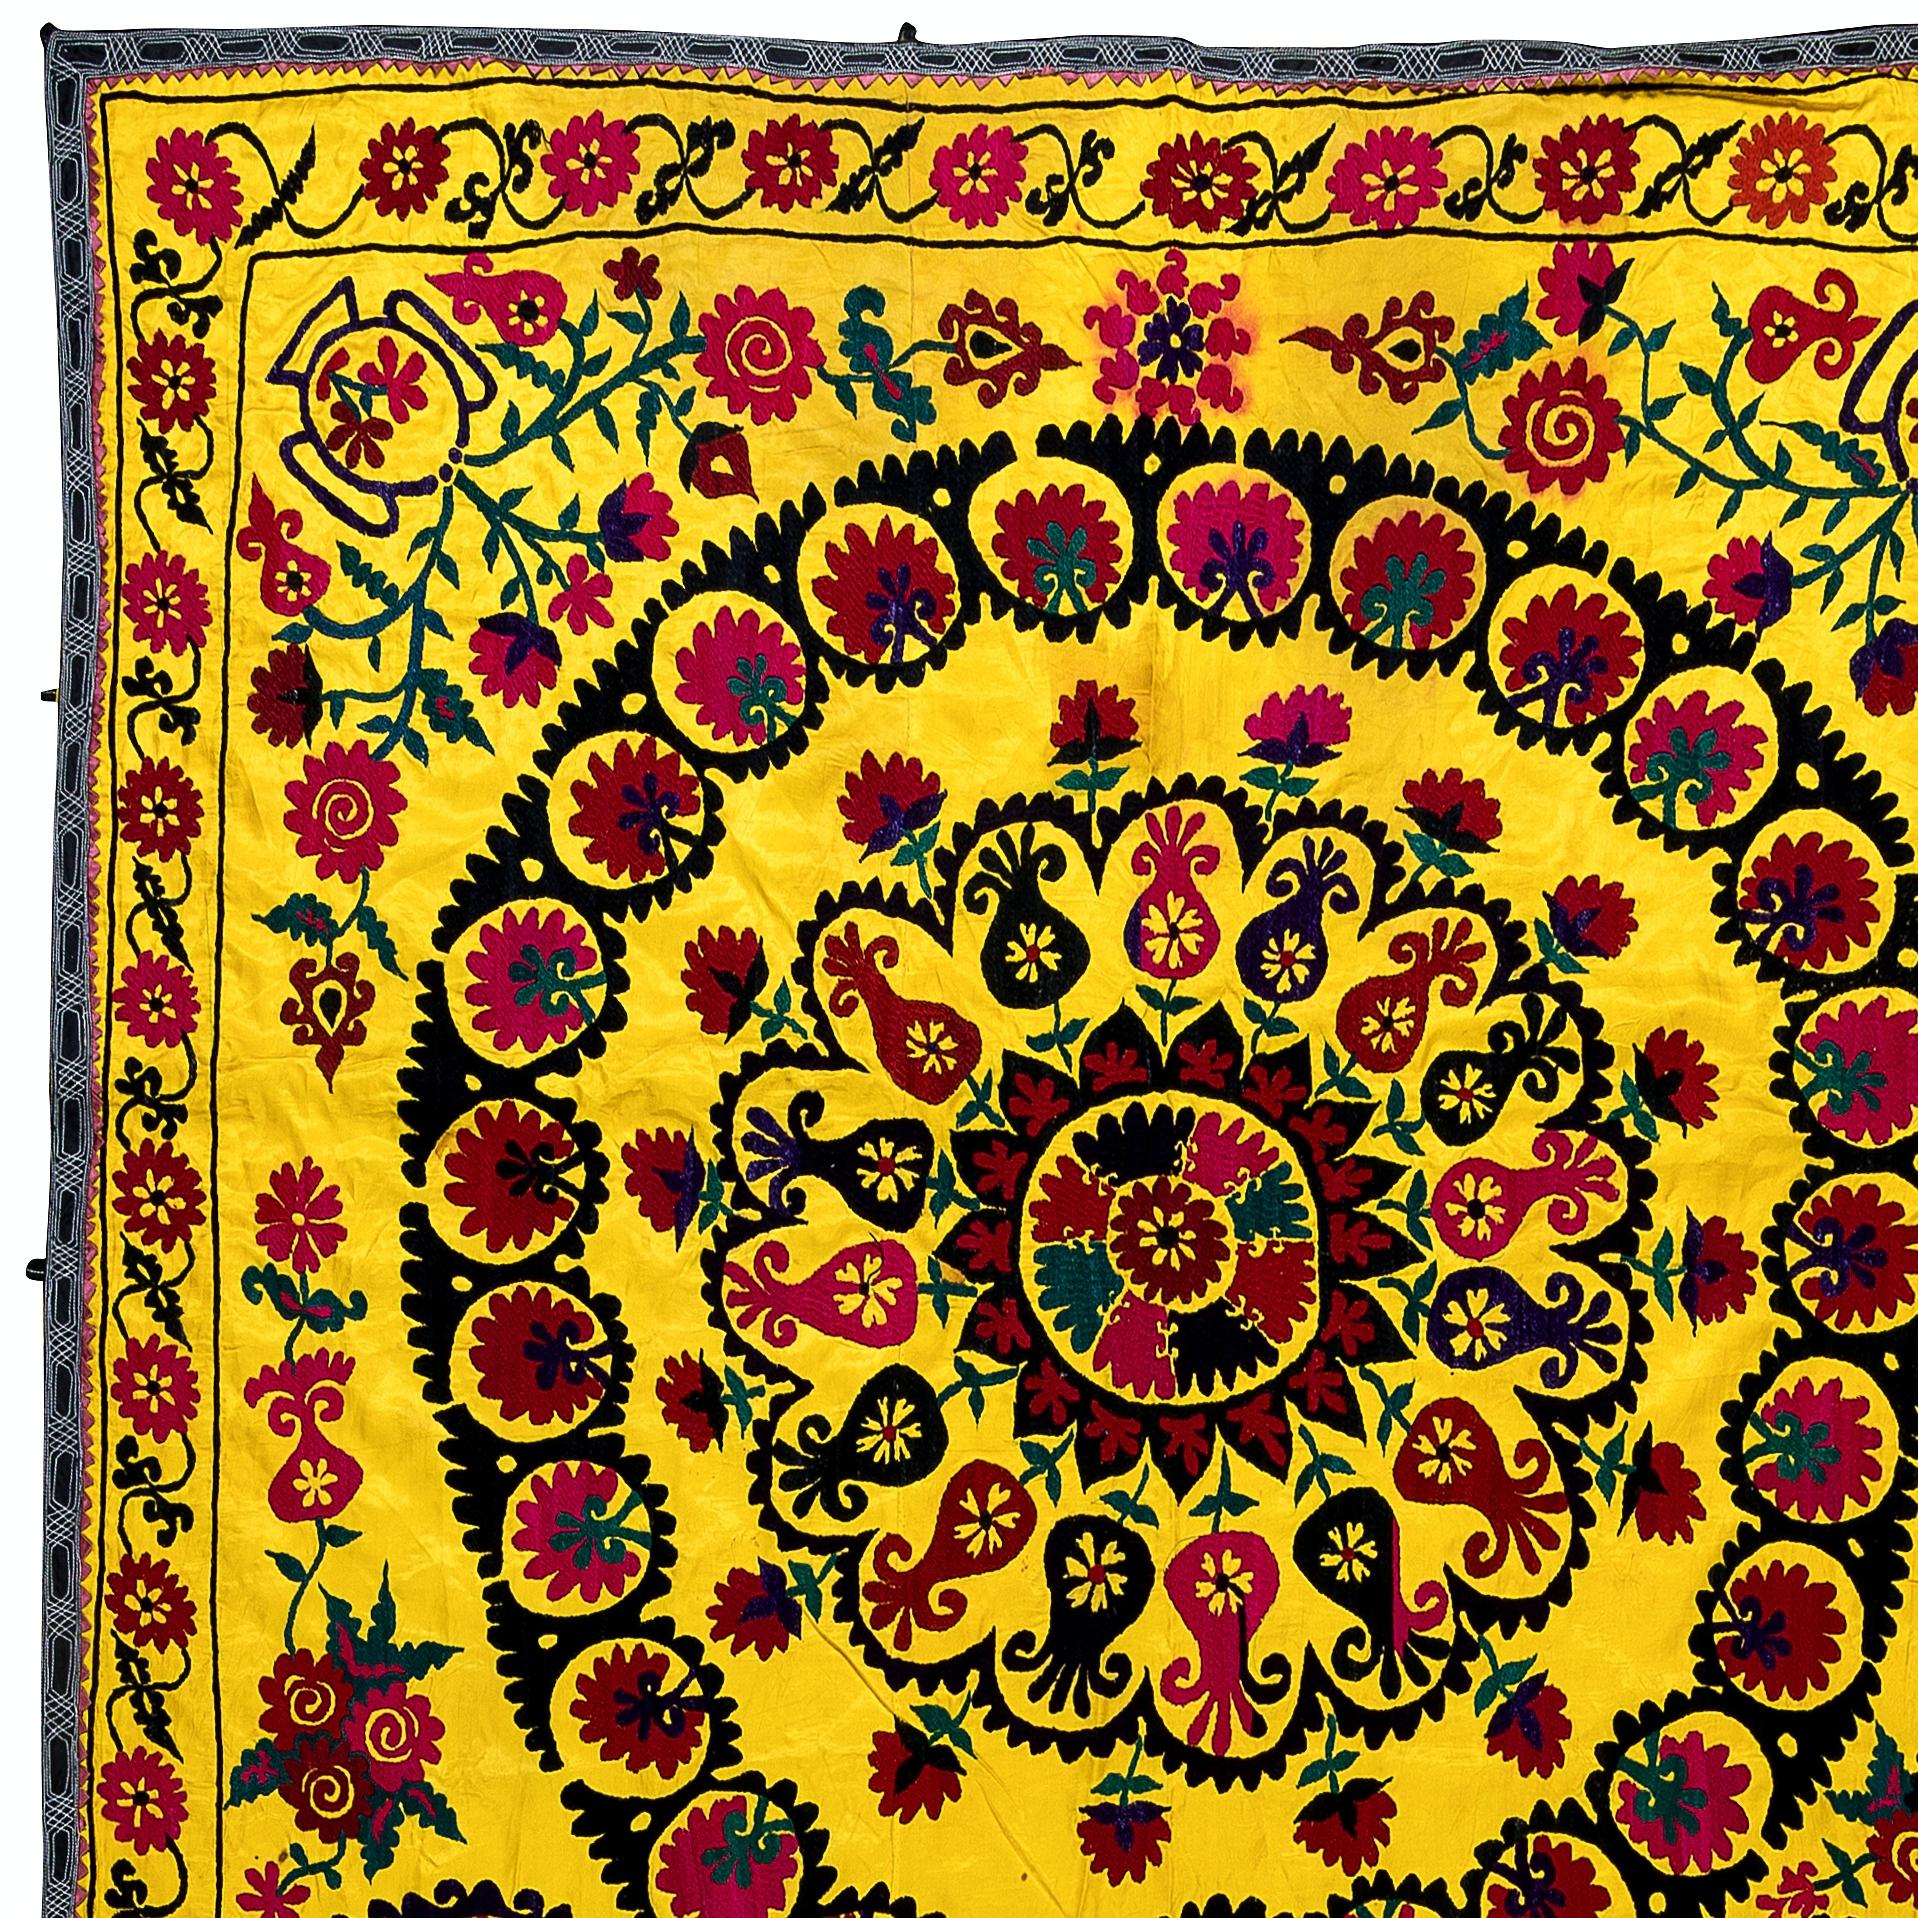 Suzani, terme d'Asie centrale désignant un type spécifique de travaux d'aiguille, est également le nom plus général des pièces textiles décoratives extrêmement populaires qui présentent ces travaux d'aiguille dans des couleurs vives avec des motifs